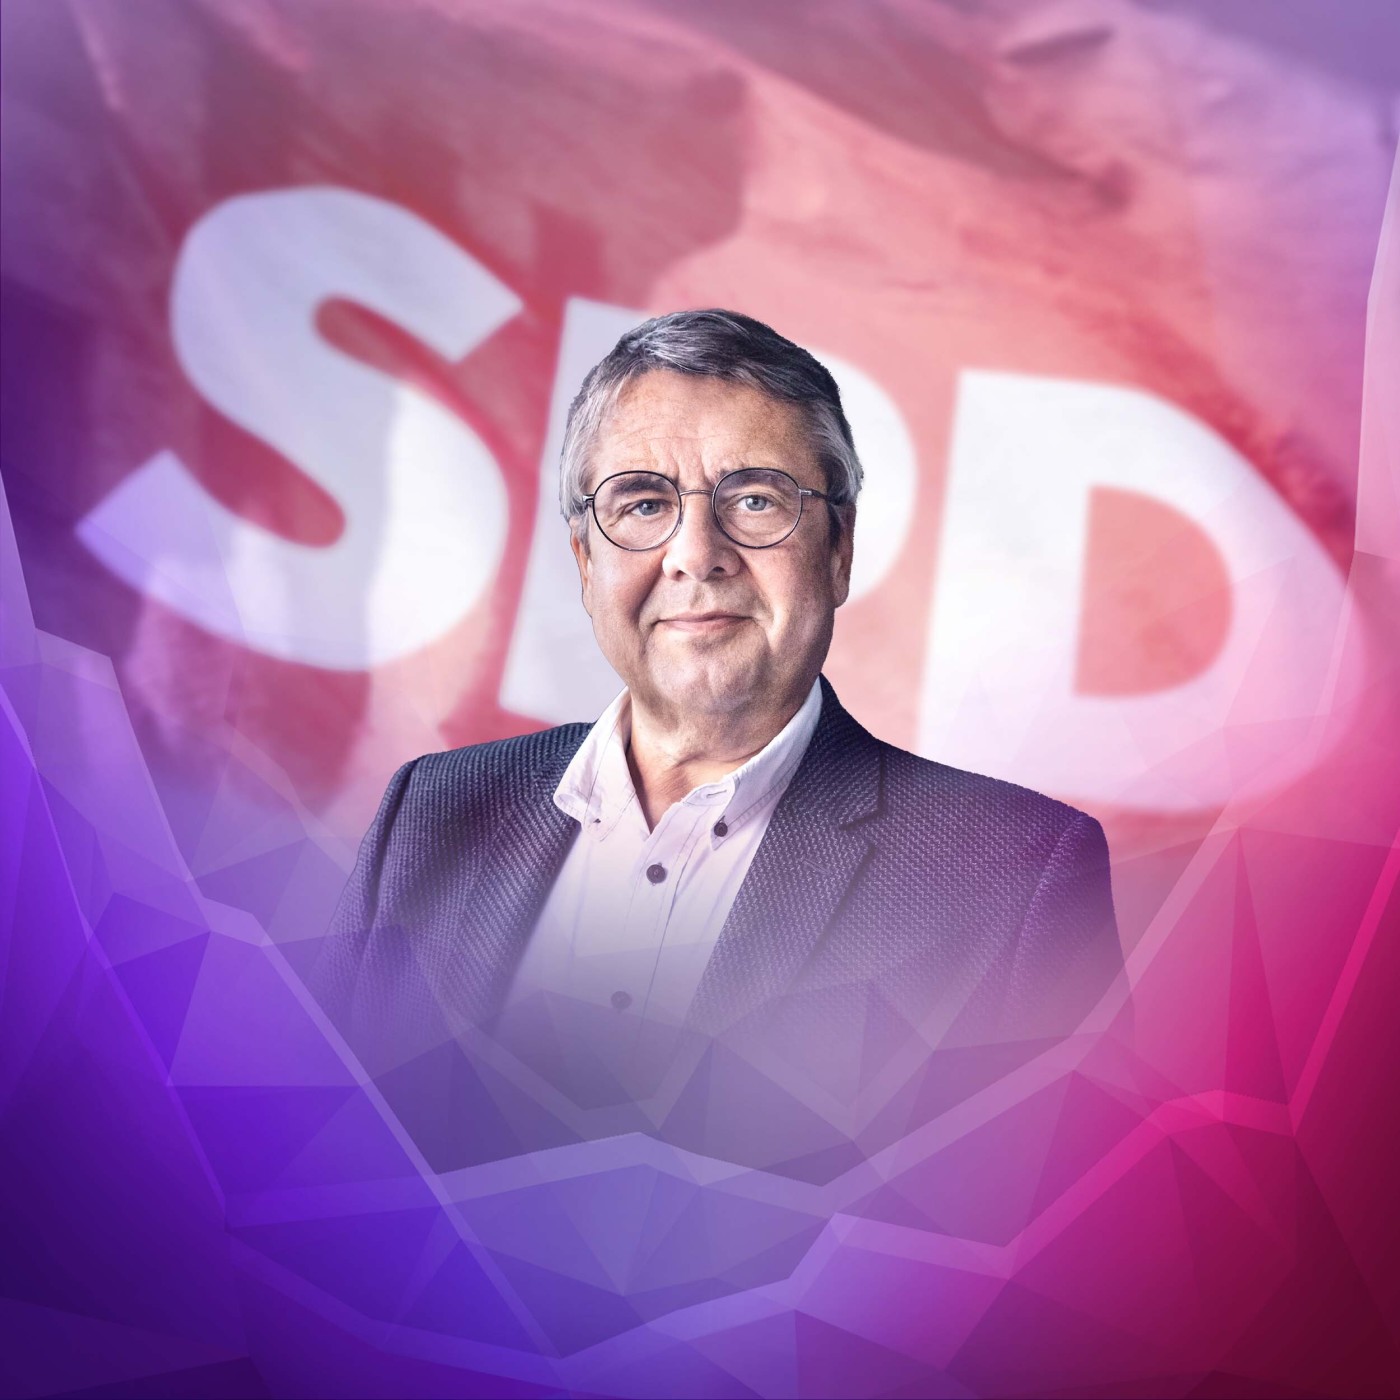 Warum steckt die SPD so in der Krise, Sigmar Gabriel?